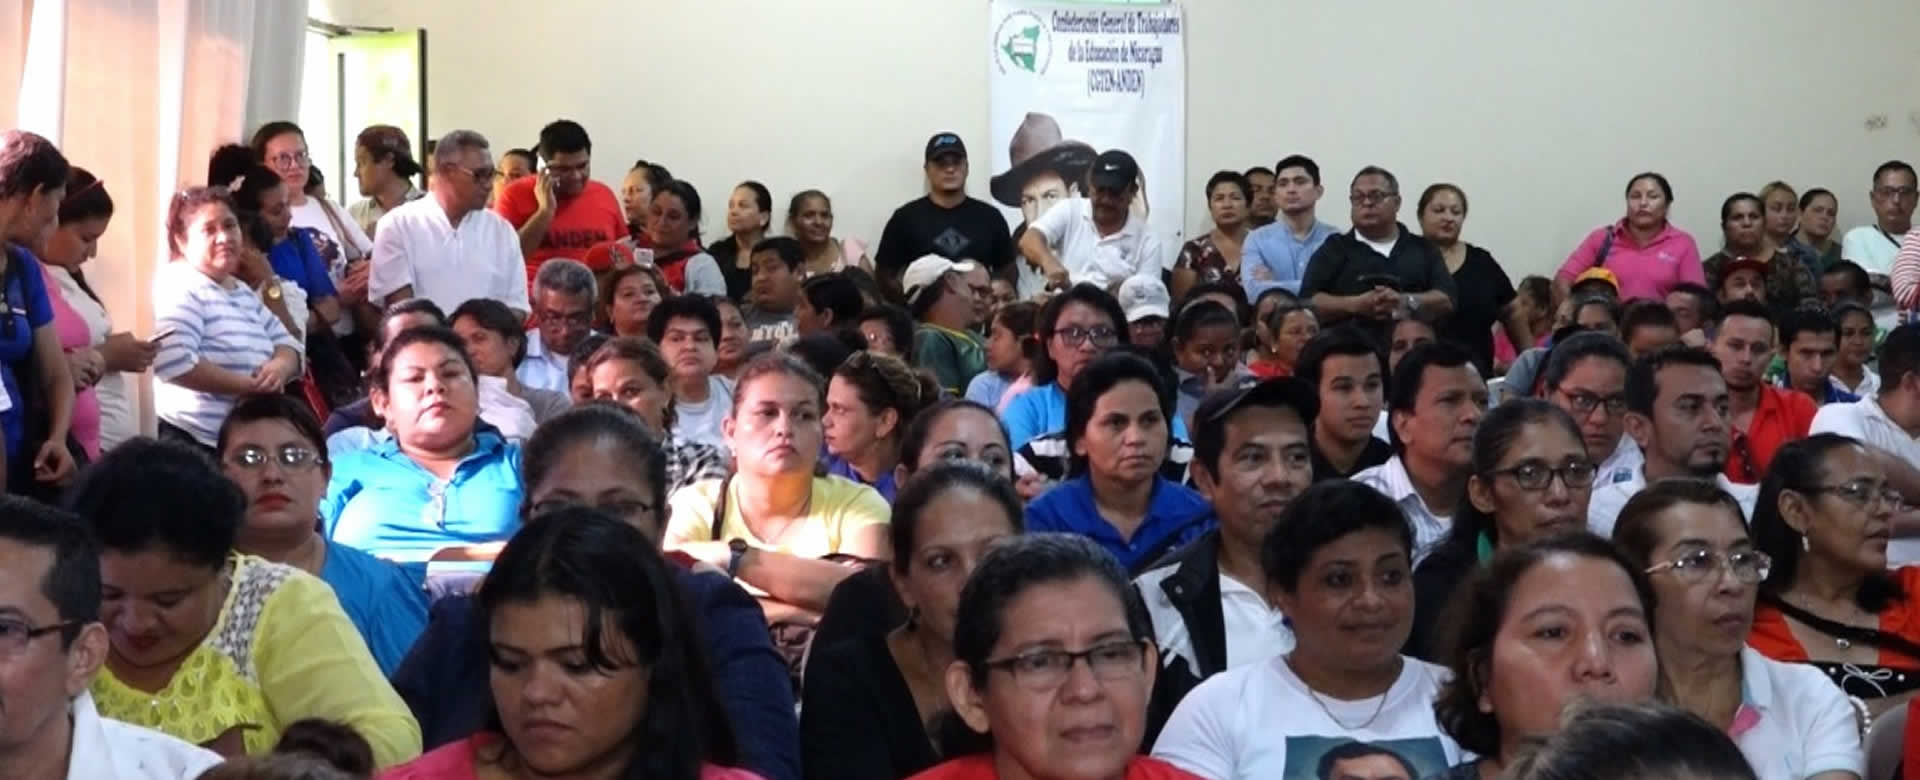 Trabajadores de la Educación rechazan el Golpe de Estado en Bolivia